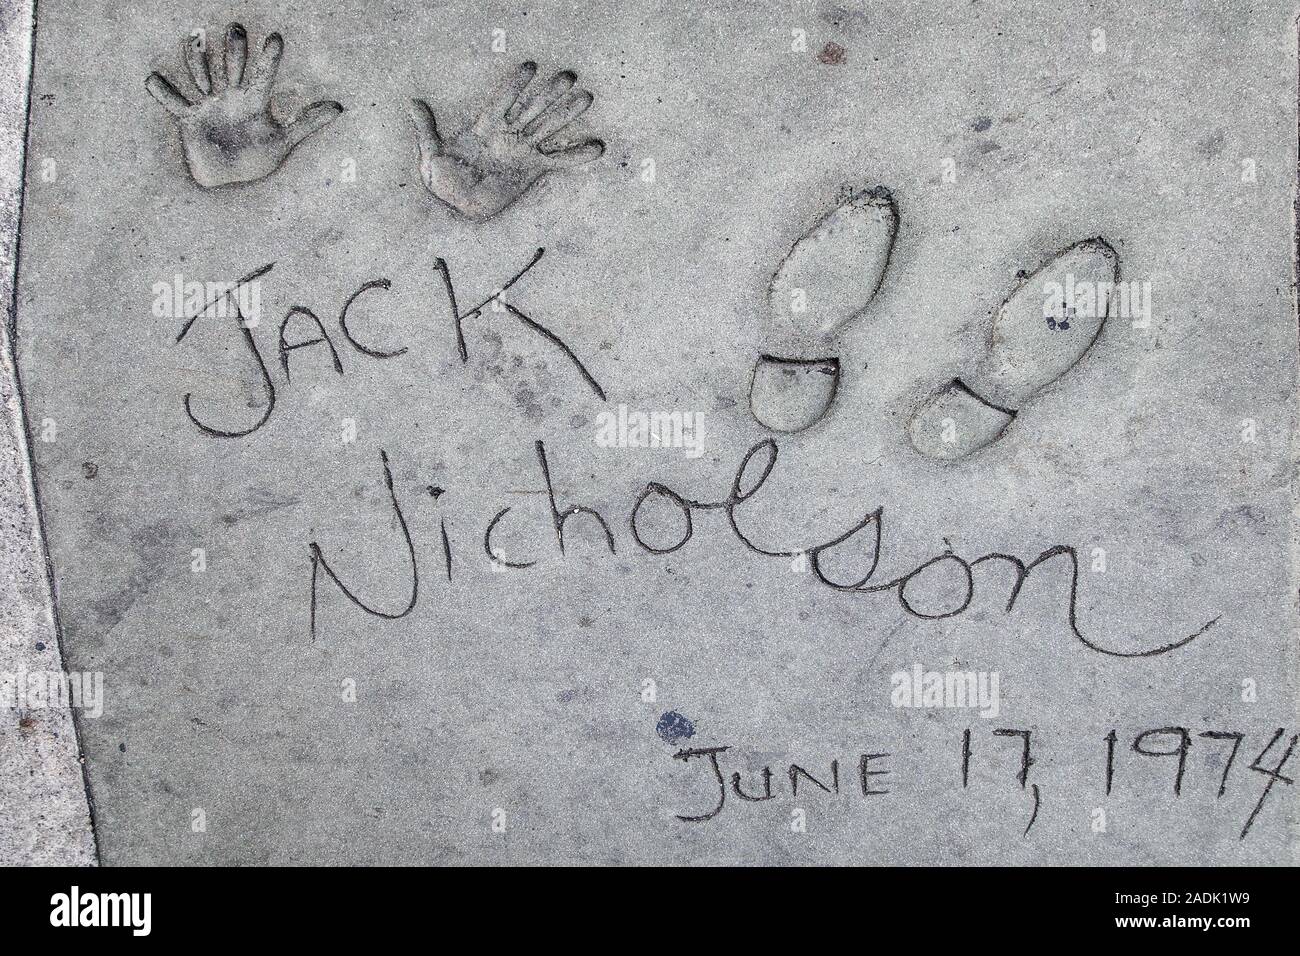 Los Angeles, Kalifornien - September 06, 2019: Hand- und Fußabdrücke von Schauspieler Jack Nicholson in der Grauman Chinese Theater Vorplatz, Hollywood. Stockfoto